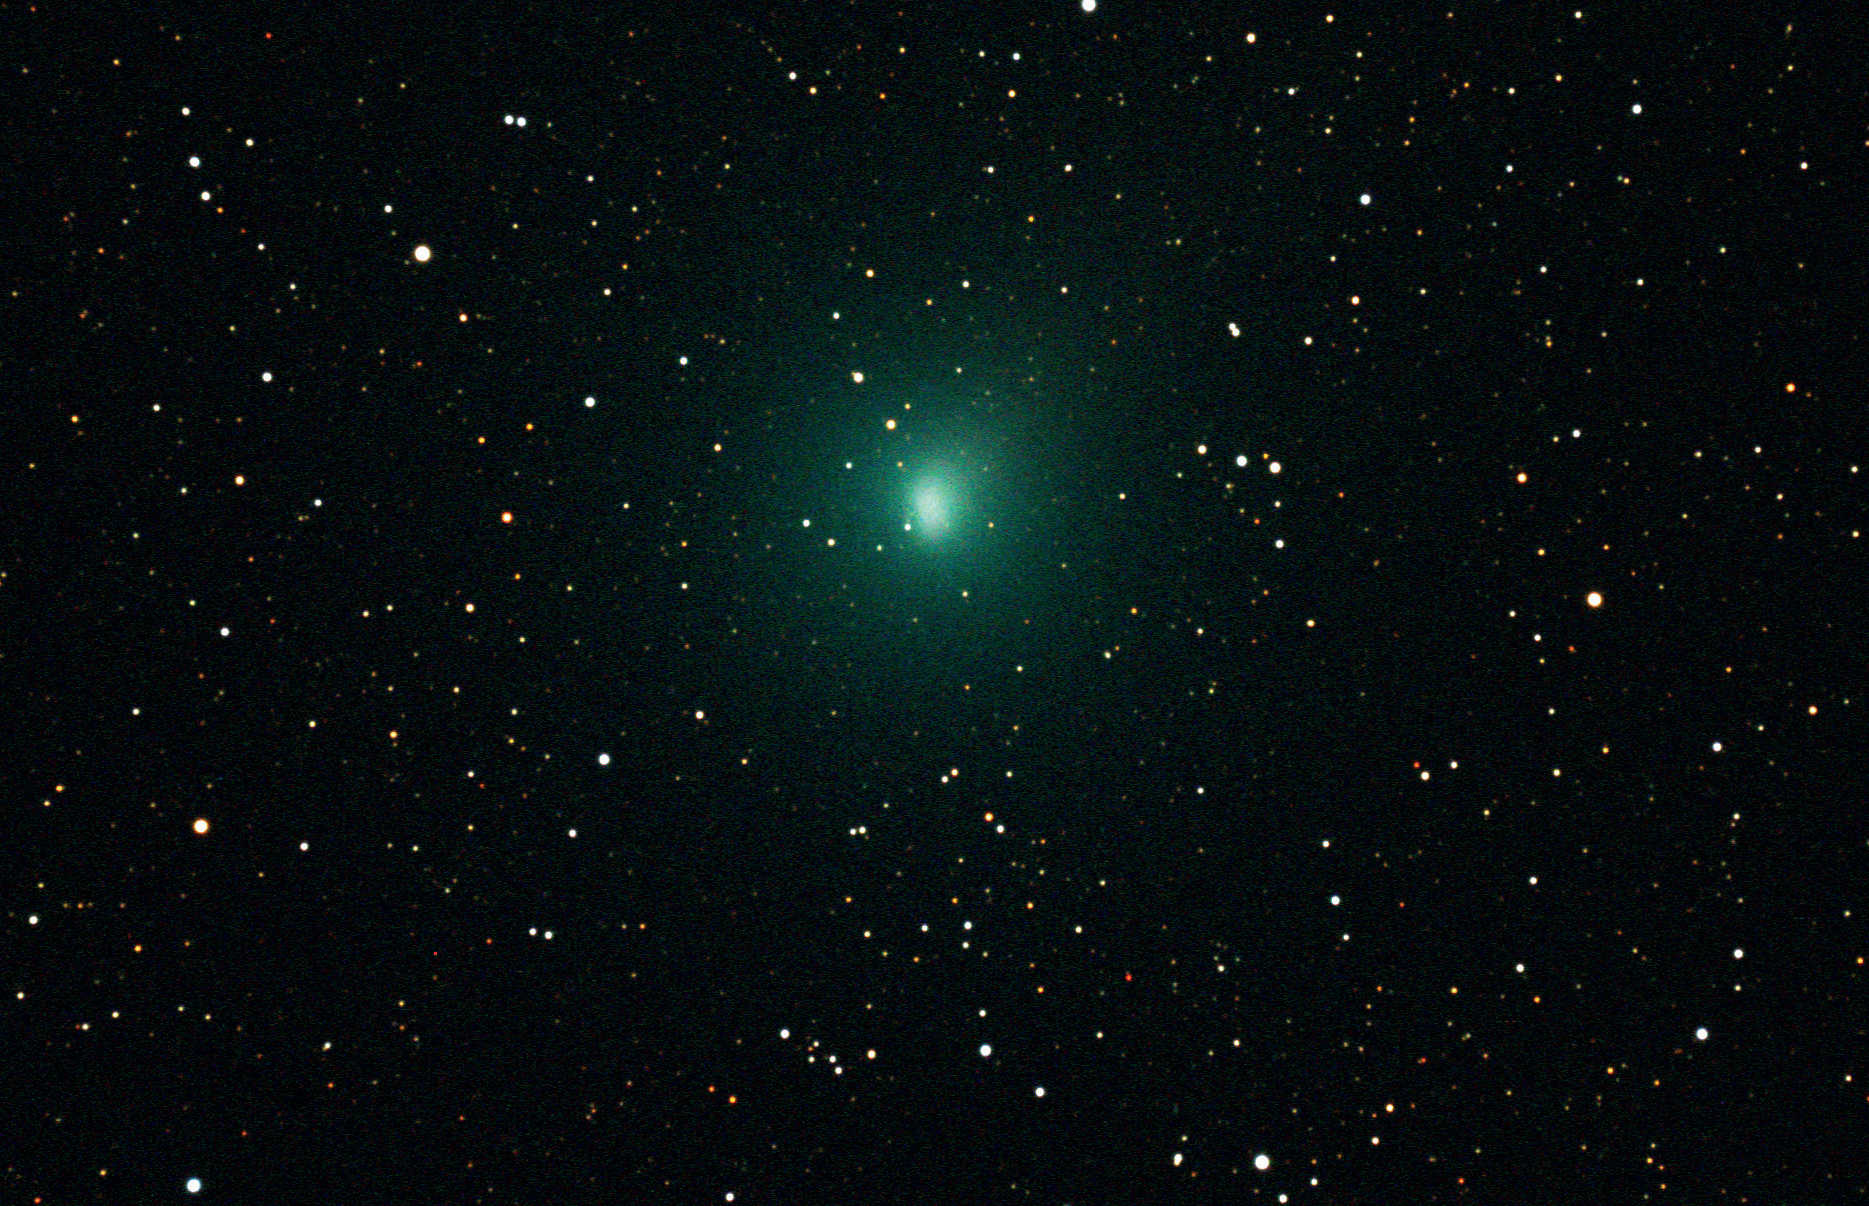 fie obiectivul se concentrează pe stele, astfel încât acestea apar punctiforme, dar capul cometei este mai puțin definit (b). Datele brute au fost obținute la data de 11 octombrie 2010 cu un aparat de fotografiat CCD răcit de tip SBIG ST-4000XCM, montat pe un Takahashi TOA-130. Imaginile compuse sunt alcătuite din opt fotografii individuale cu un timp de expunere de 120 de secunde fiecare. 